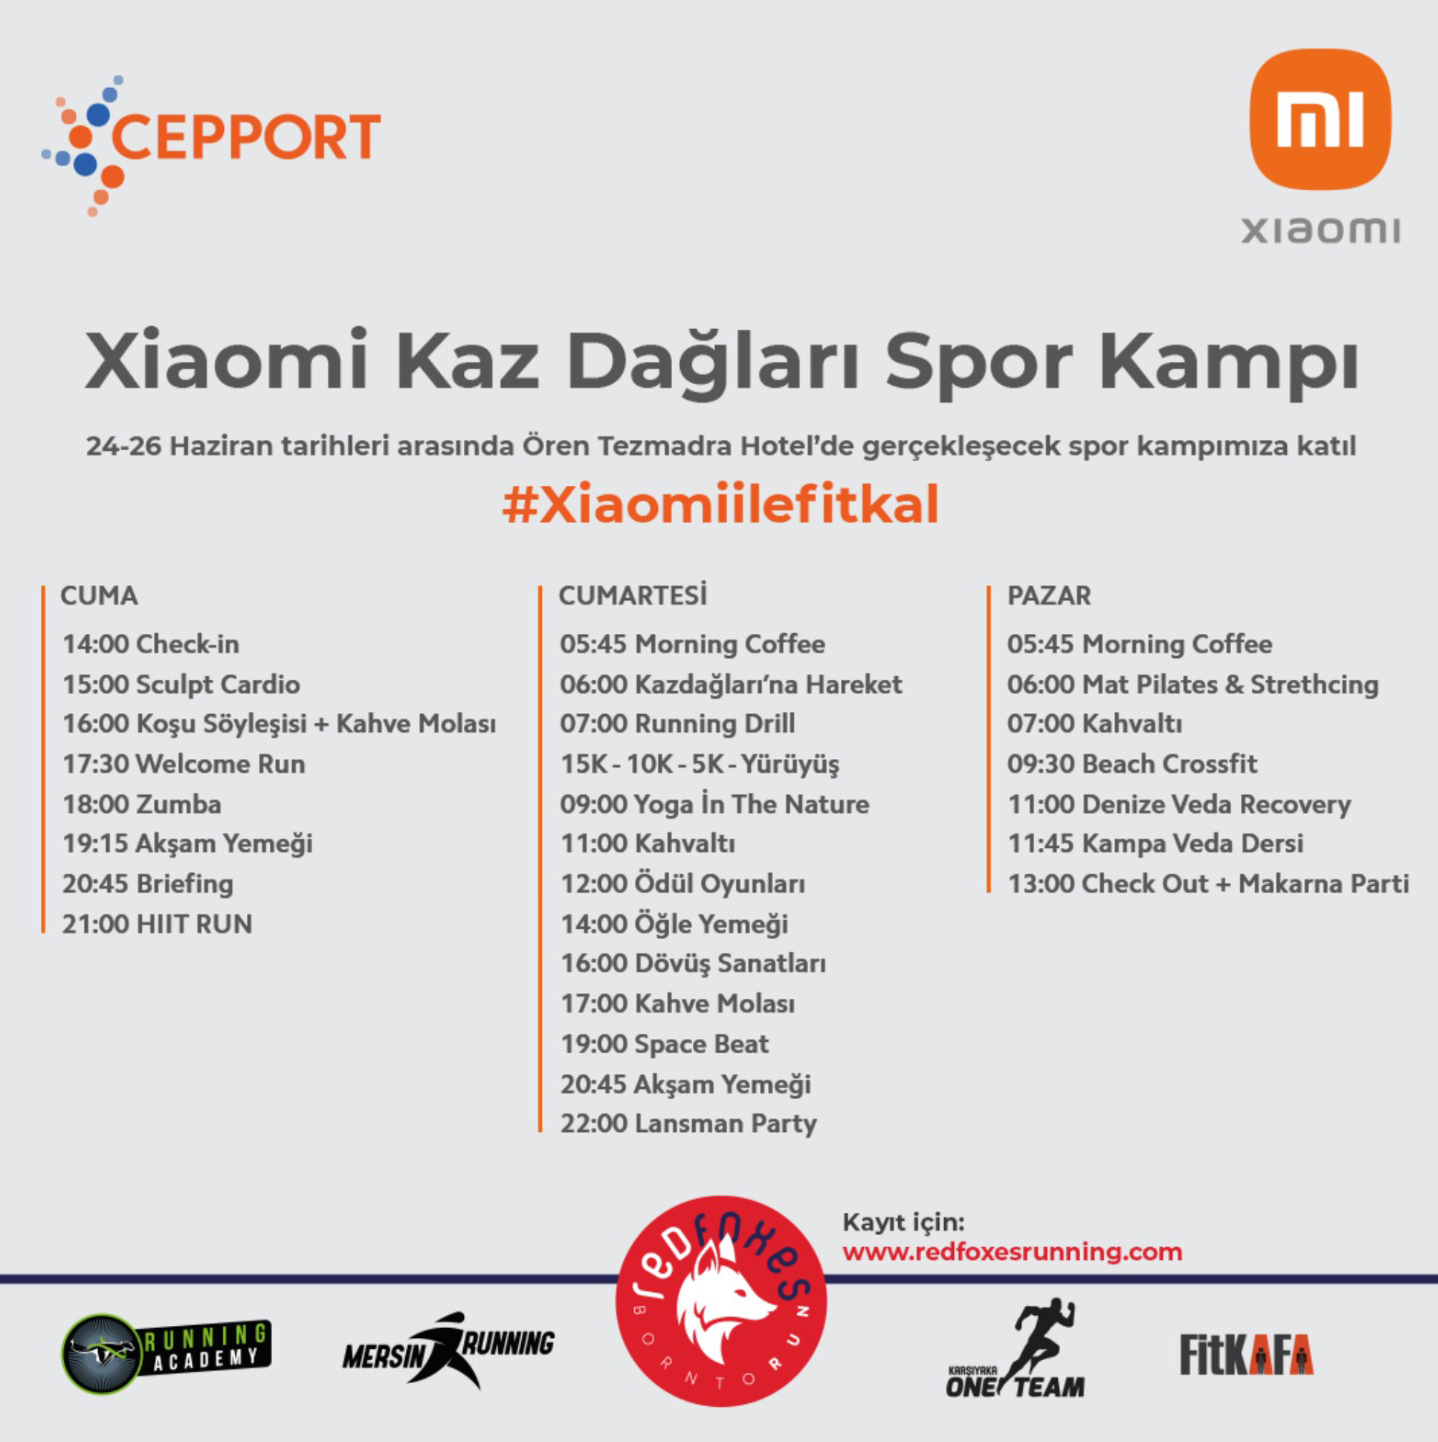 Xiaomi Kaz Dağları Spor Kampı